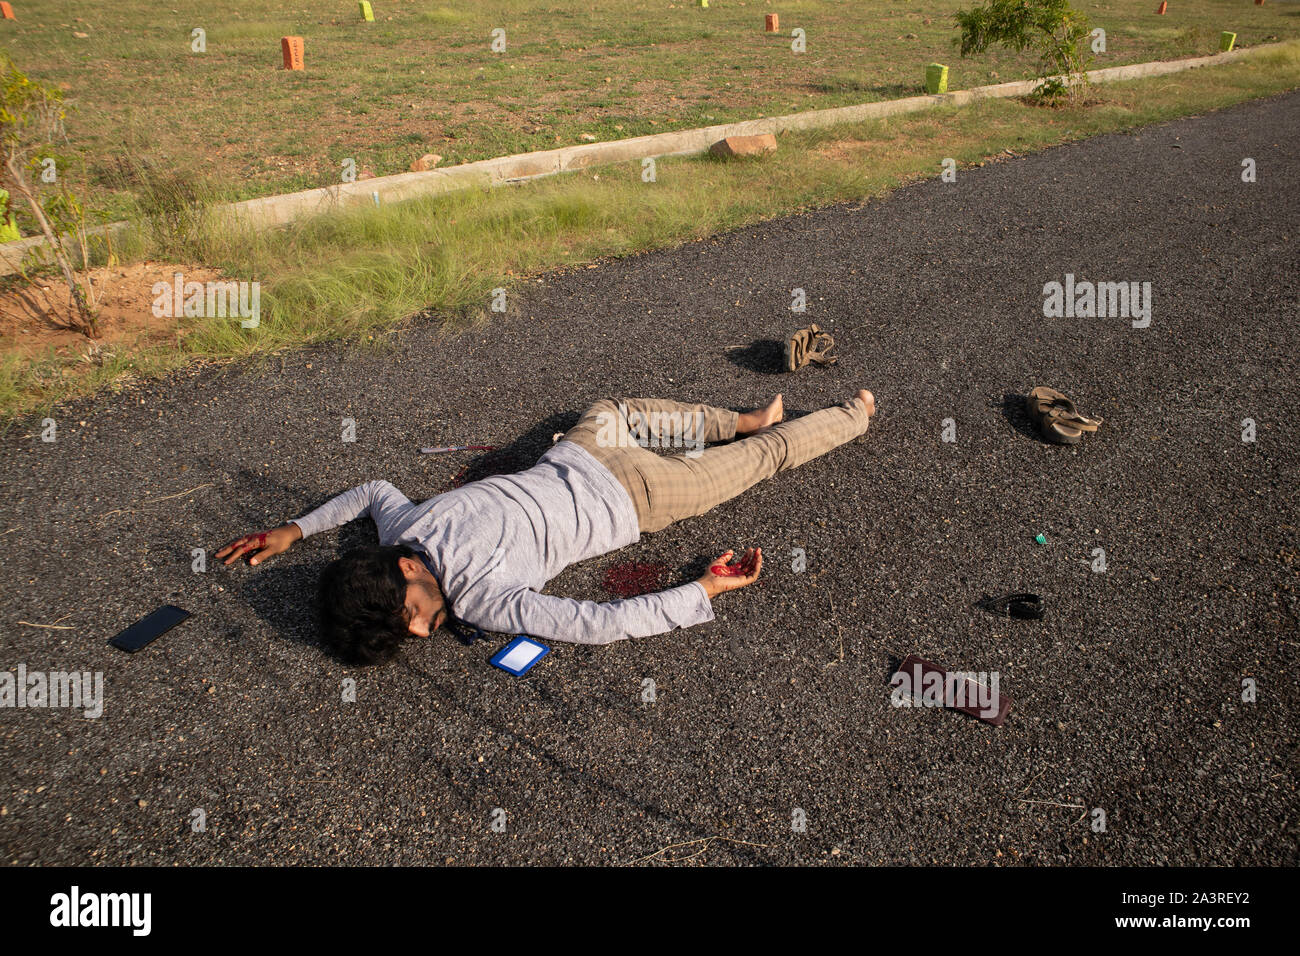 Concept de scène de crime, prise de vue au grand angle de corps mort victime portant sur route. Banque D'Images